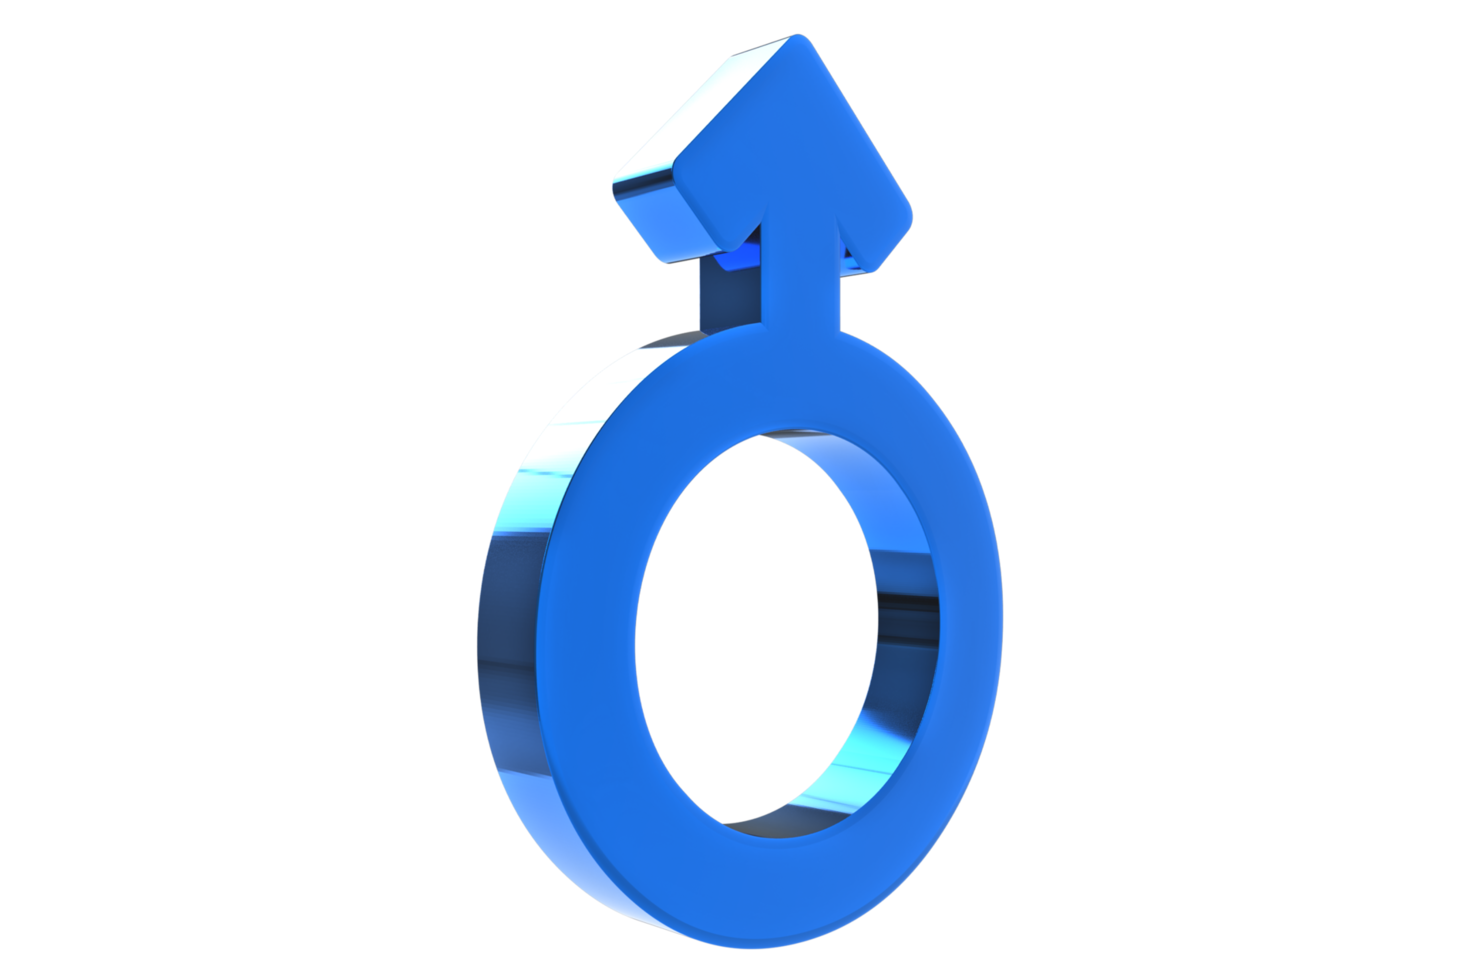 signo sexual masculino, femenino. ilustración de símbolos de género. representación 3d simbolos de genero 3d png